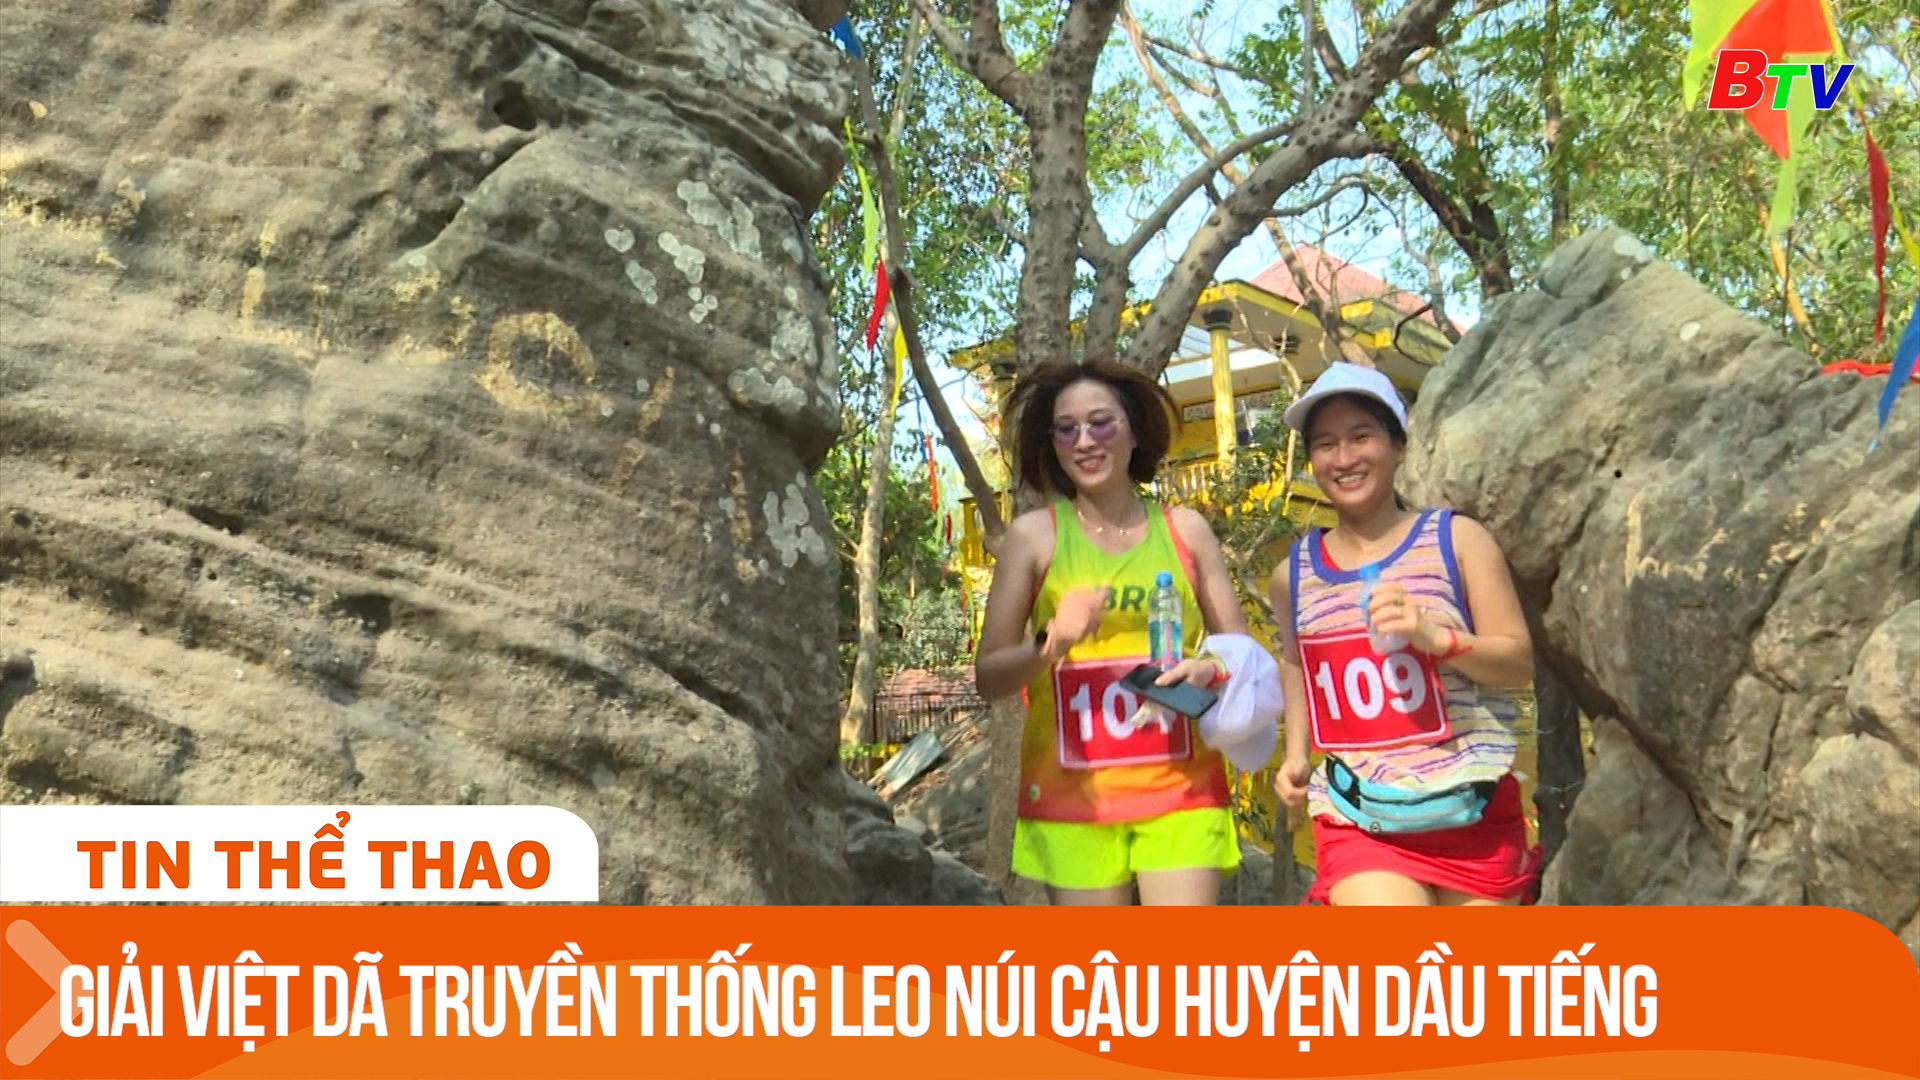 Giải việt dã truyền thống leo Núi Cậu huyện Dầu Tiếng | Tin Thể thao 24h	